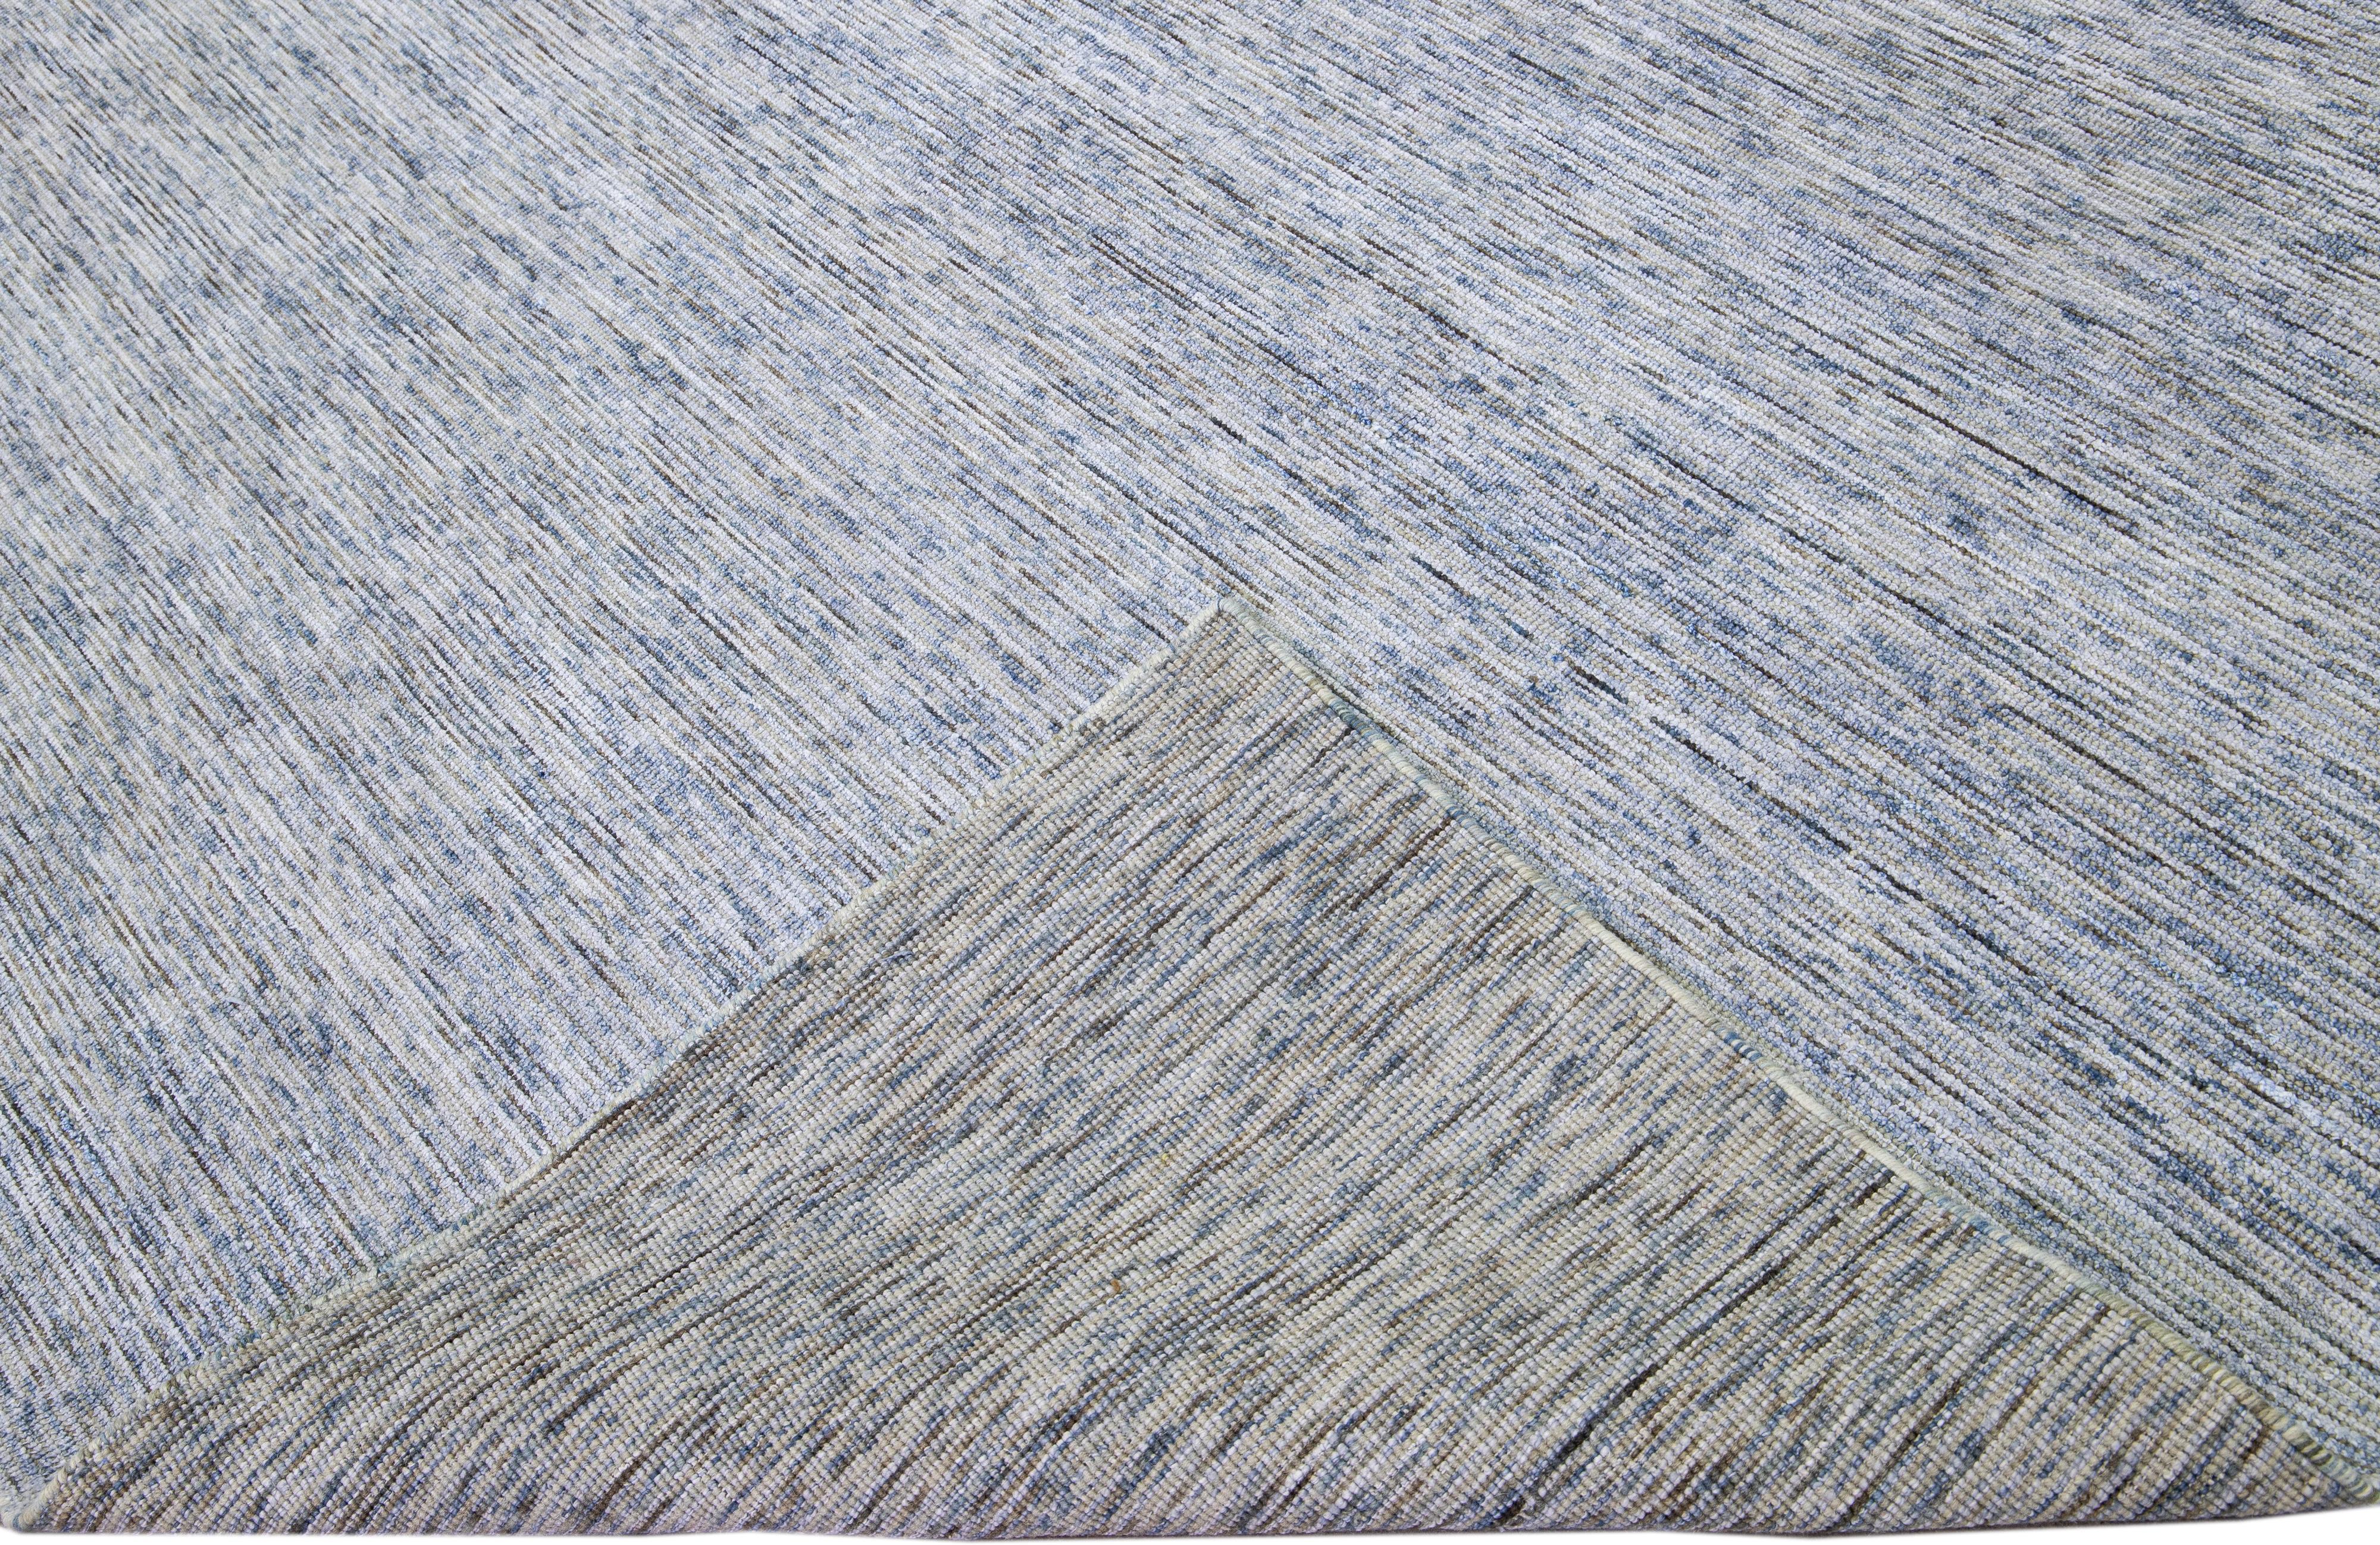 Schöner handgefertigter indischer Rillenteppich aus Bambus und Seide von Apadanas mit grauem und blauem Feld. Dieser Teppich aus der Groove-Kollektion hat ein durchgängig unifarbenes Muster.

Dieser Teppich misst: 12' x 15'.

Kundenspezifische